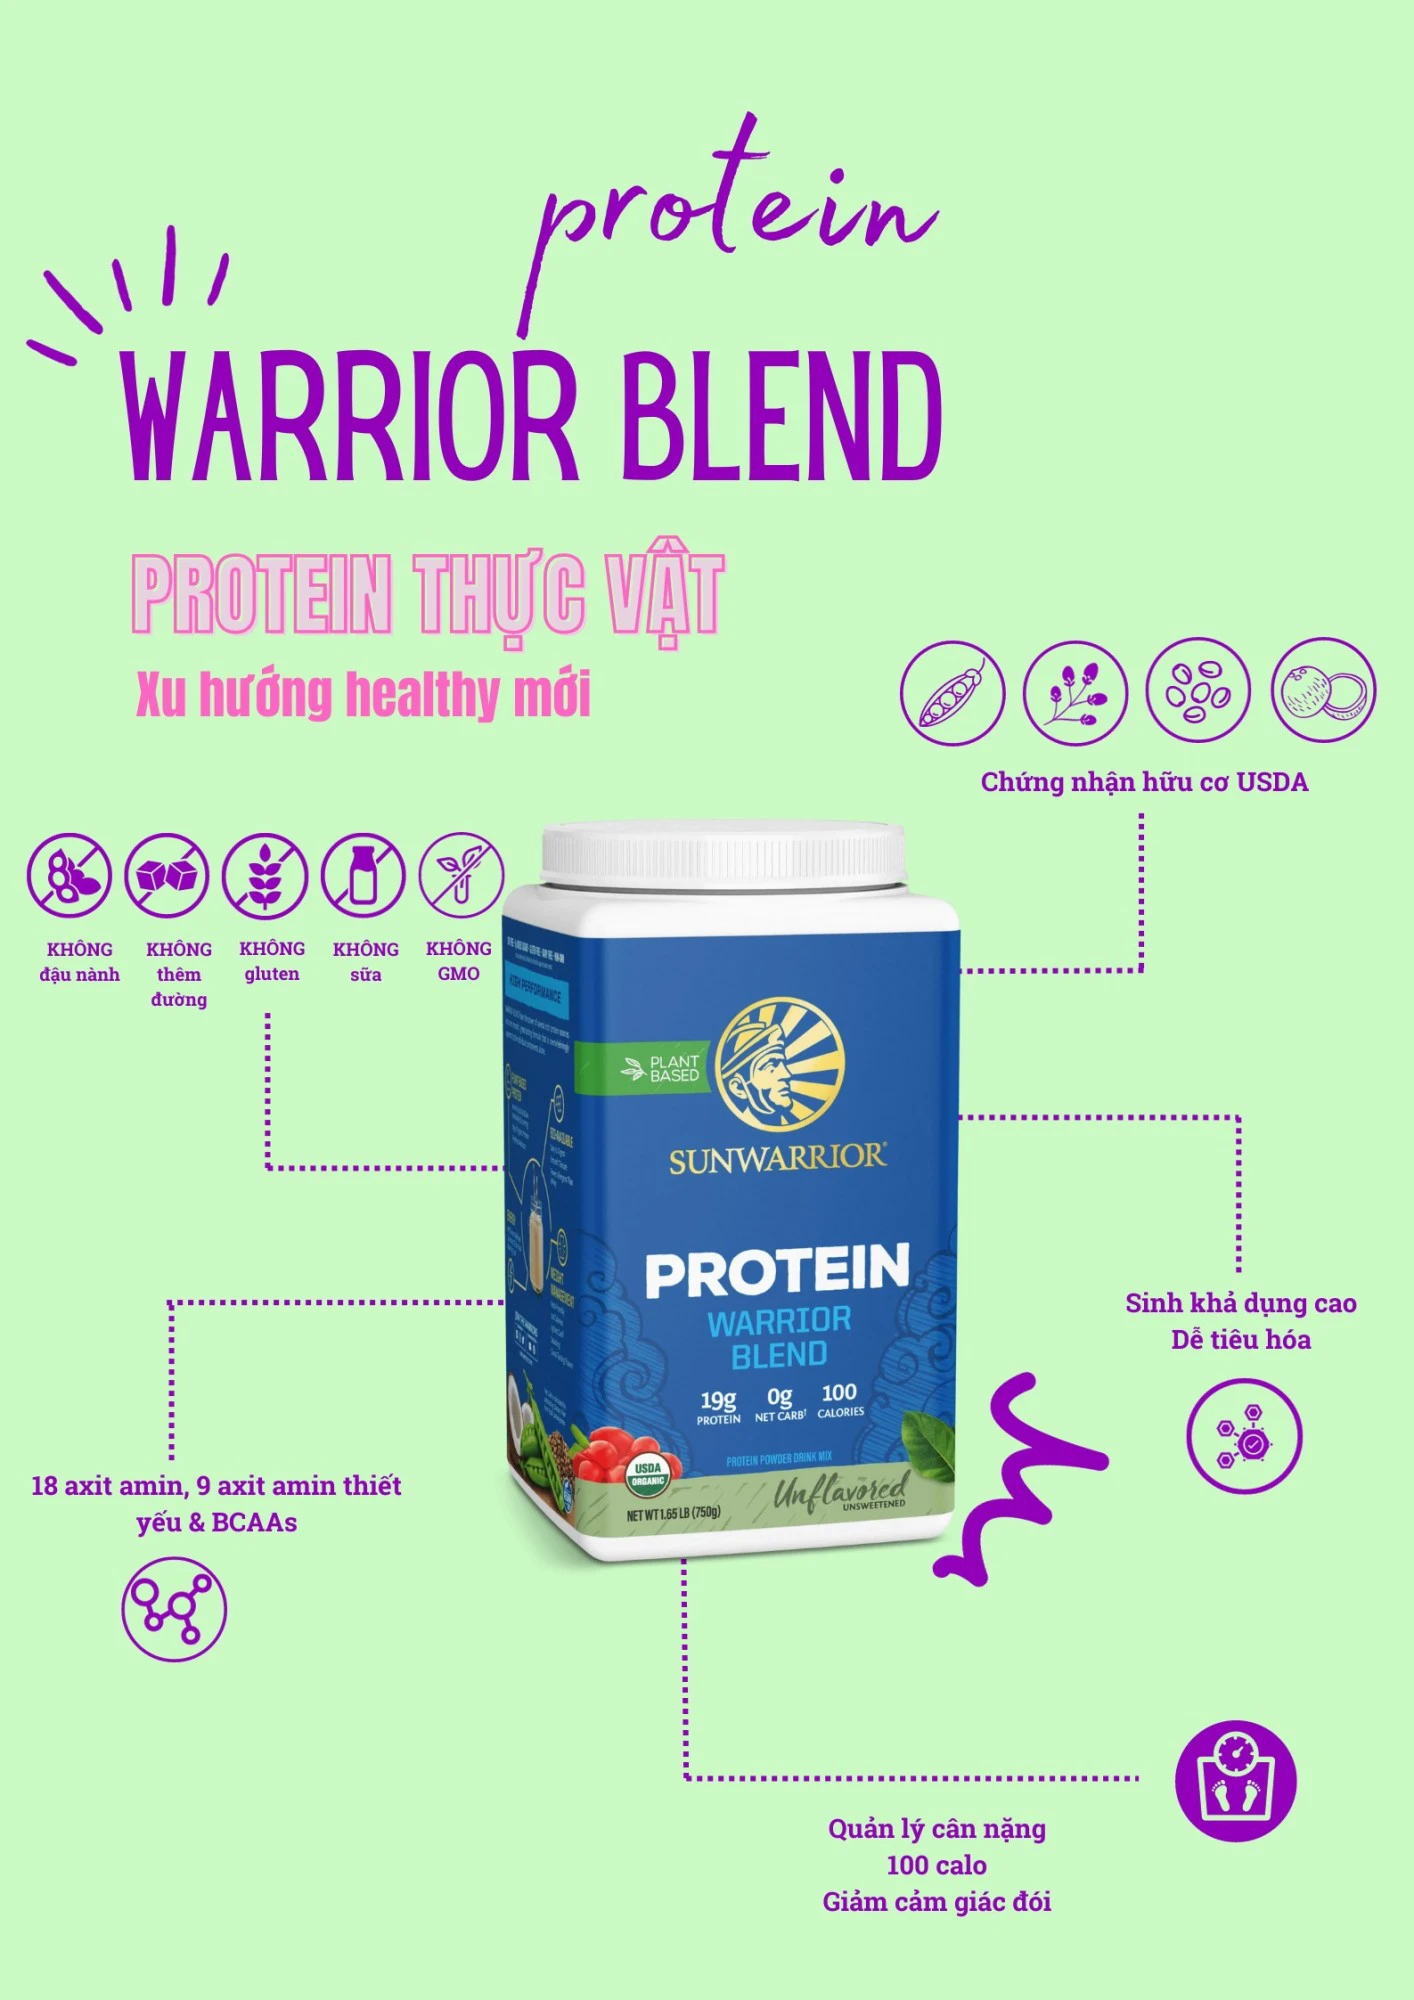 Protein Warrior Blend Sunwarrior